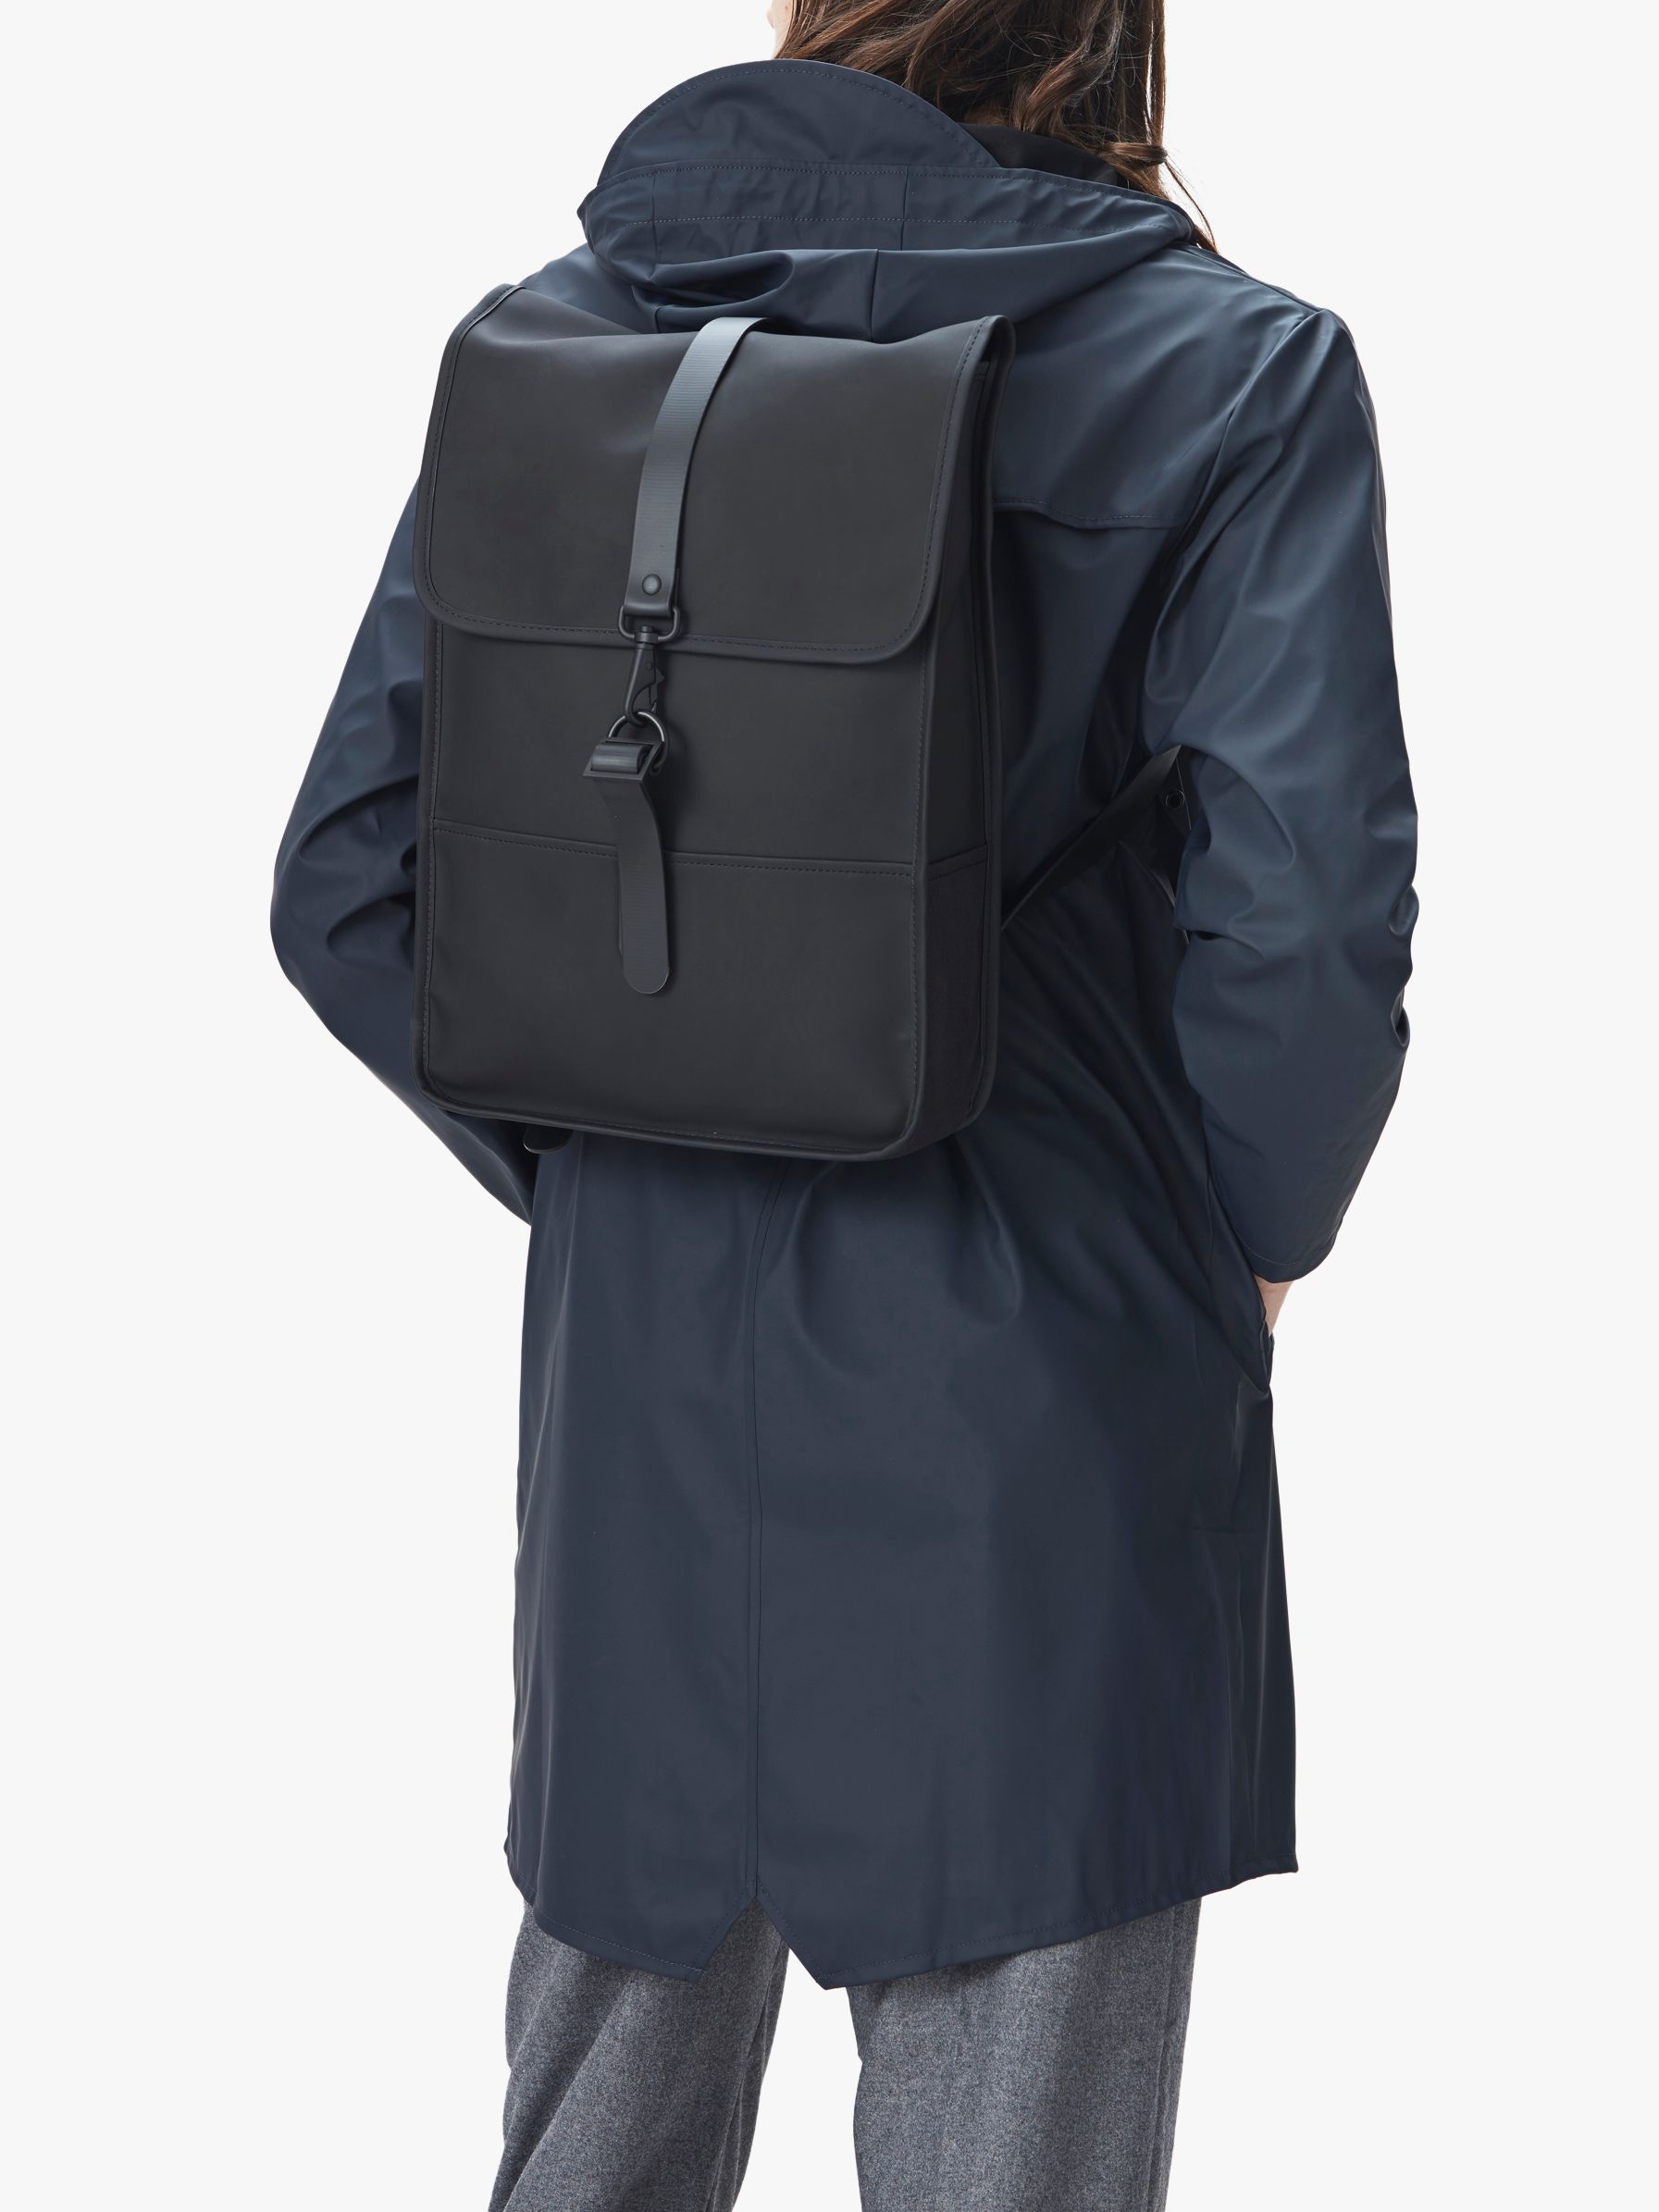 Water Mini Backpack, Black